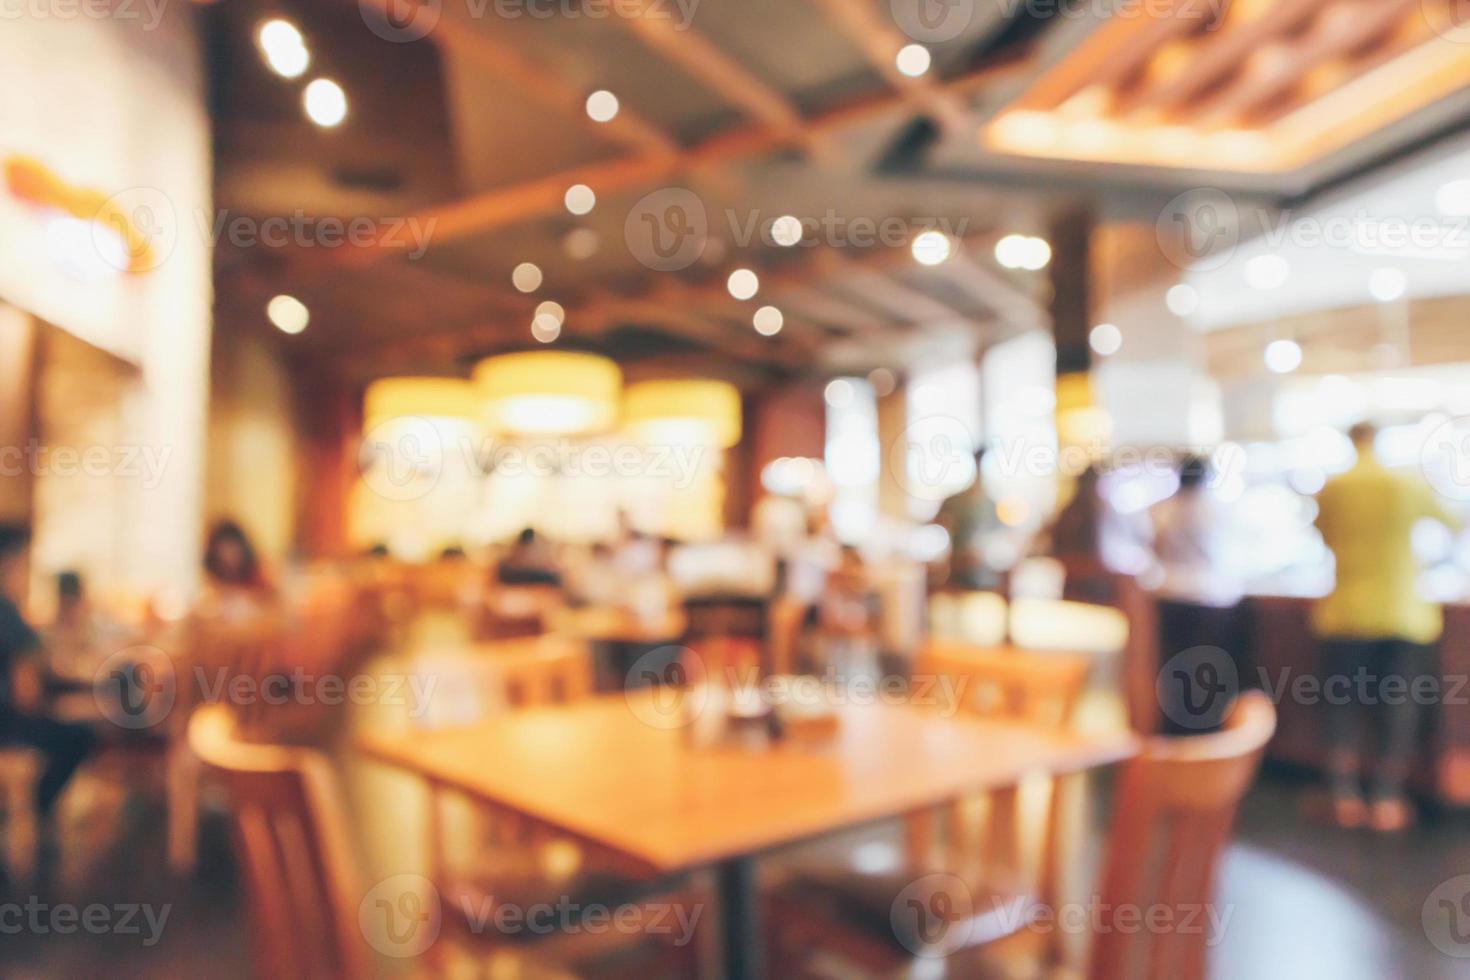 restaurang interiör med kund och trä bord oskärpa abstrakt bakgrund med bokeh ljus foto